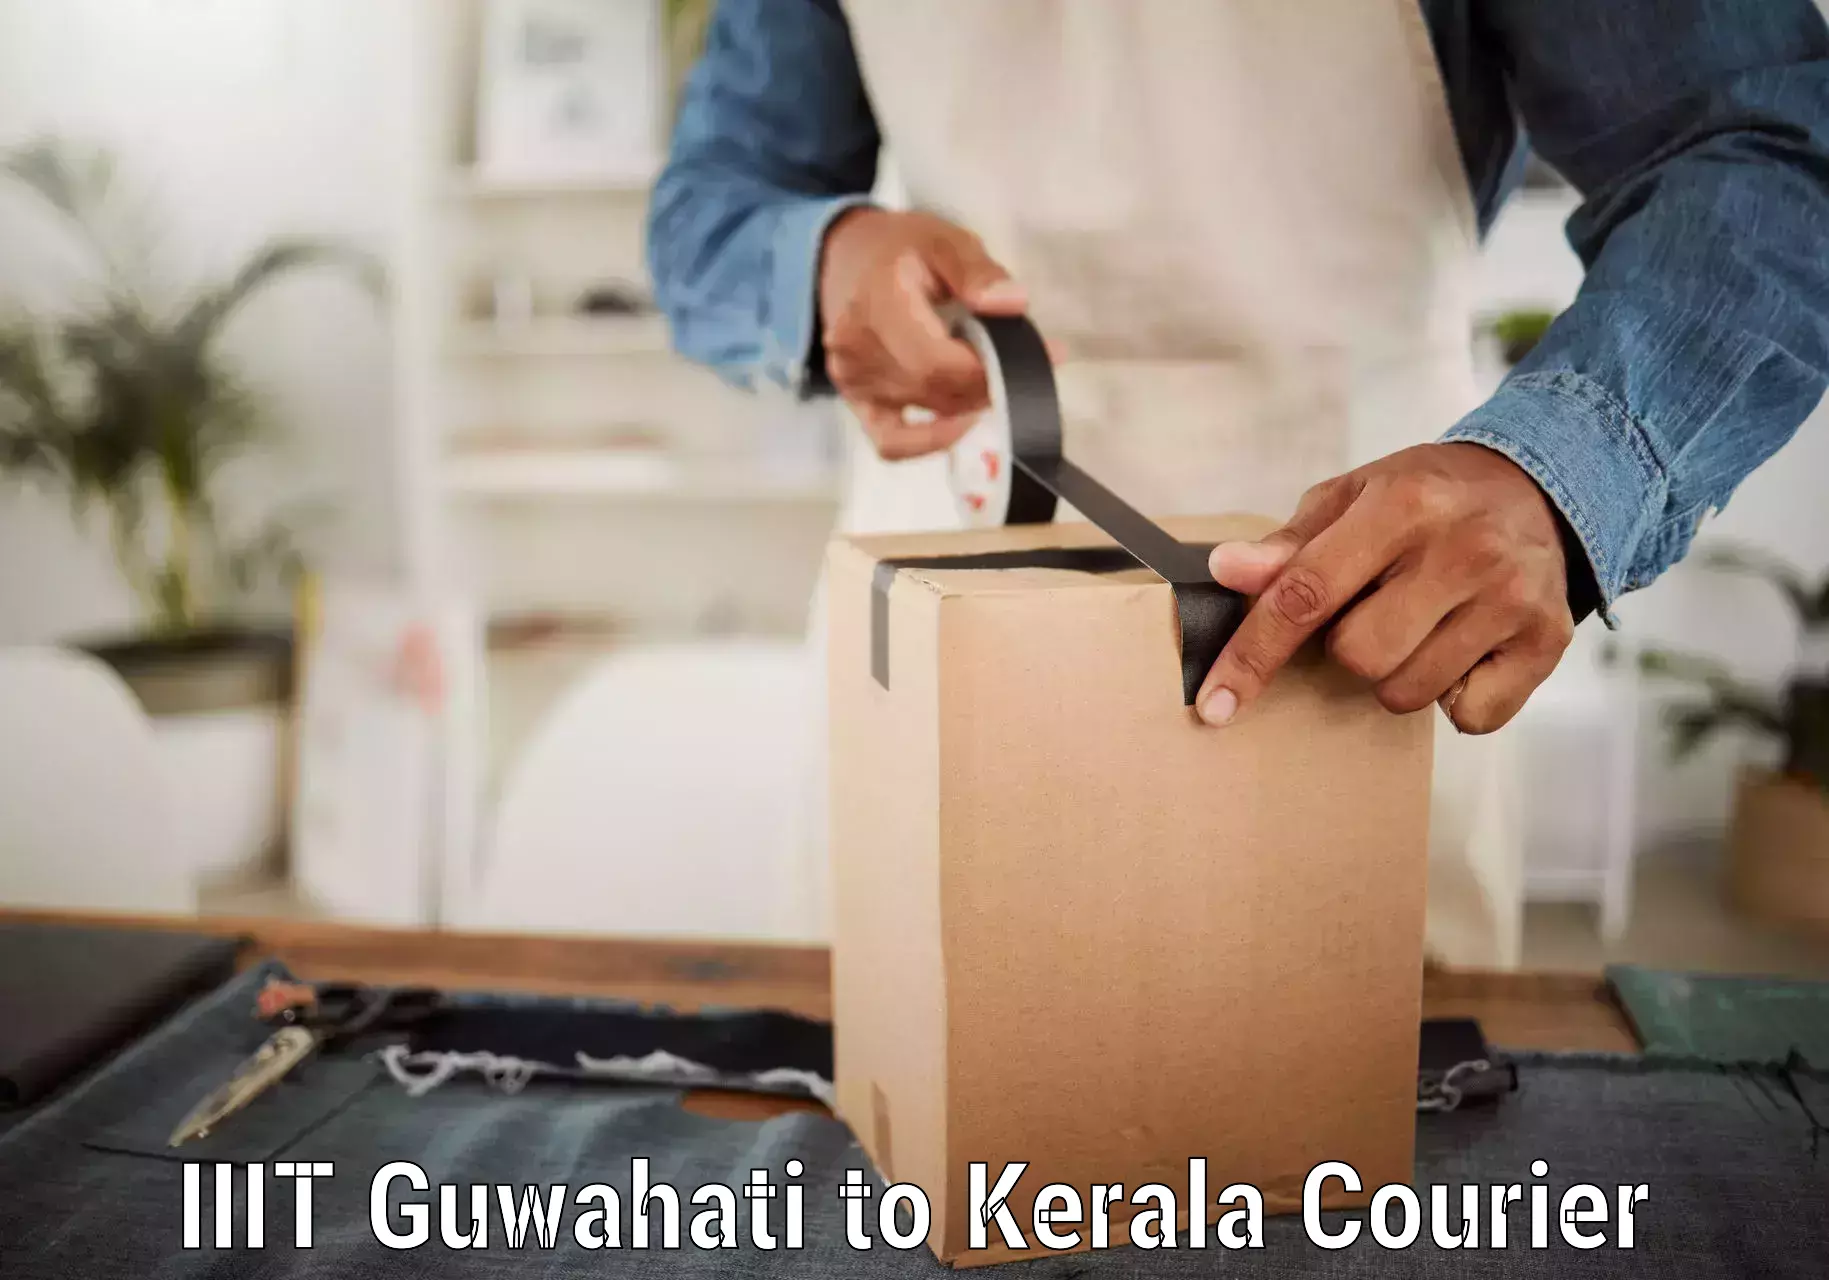 24-hour delivery options IIIT Guwahati to Kerala